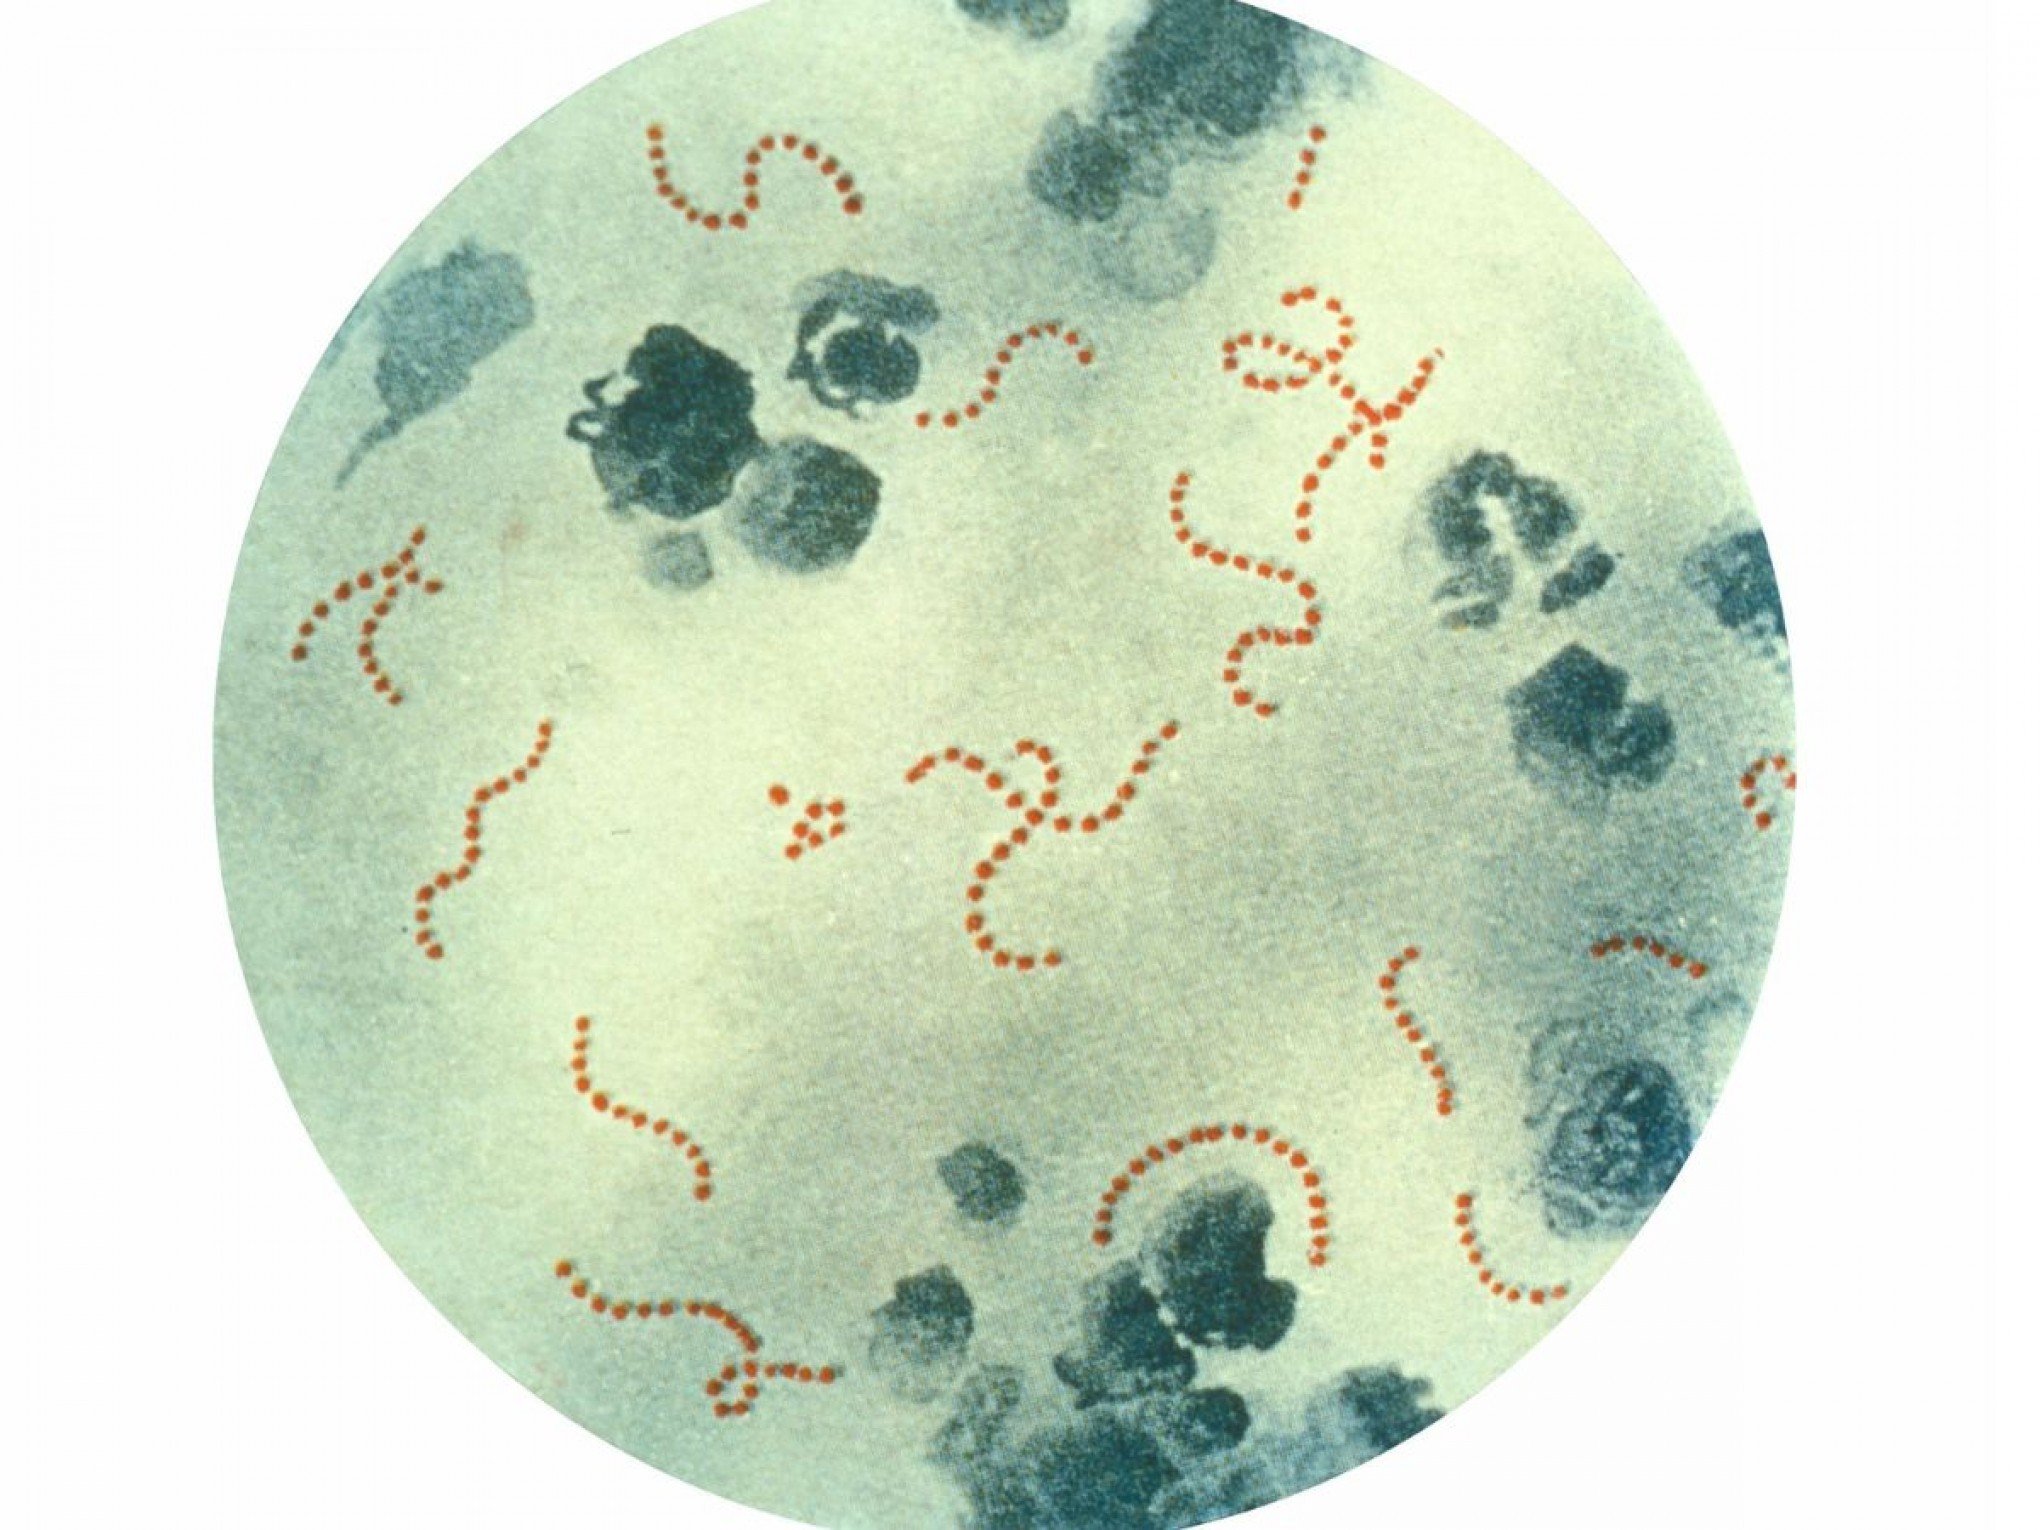 Bactéria apelidada de "comedora de ânus"? Doença perigosa está se espalhando pelo Japão